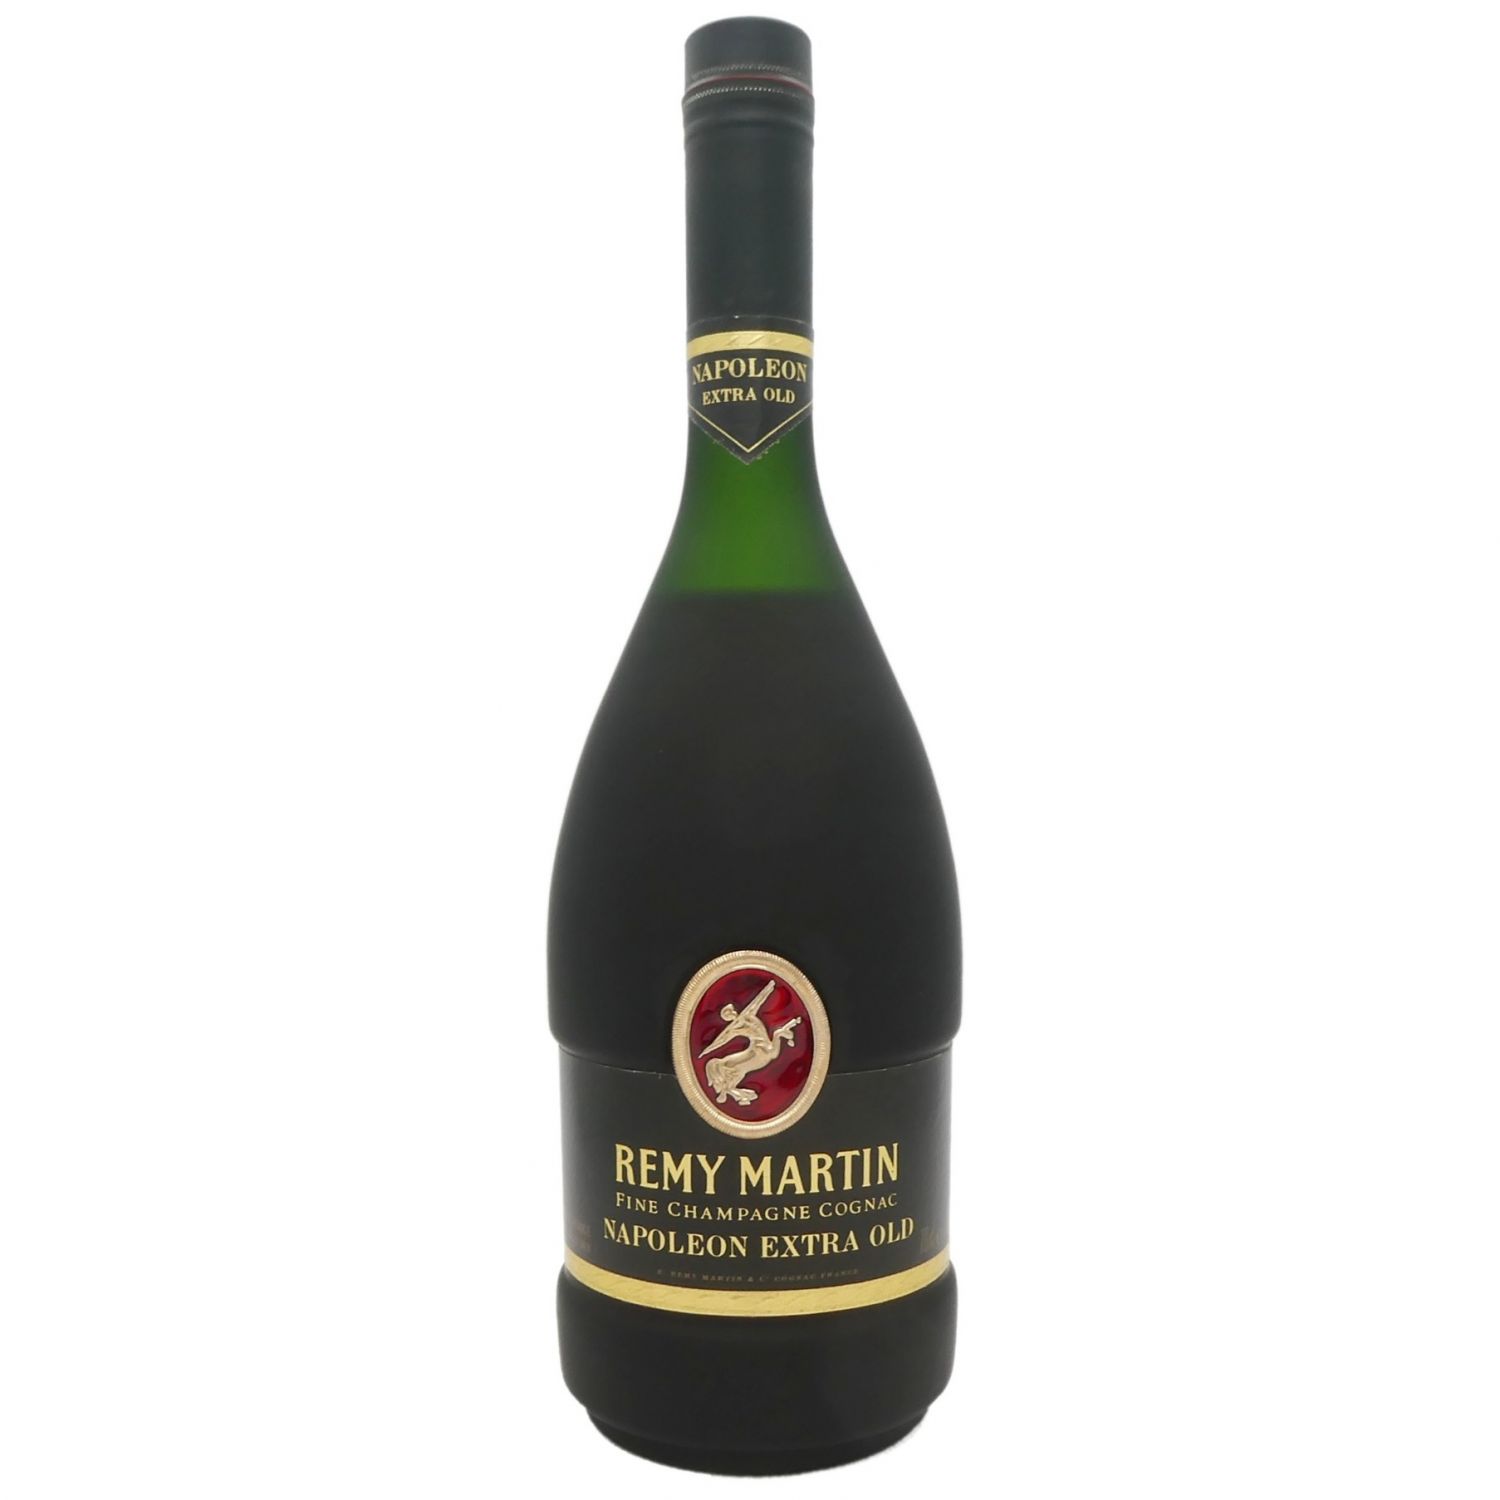 REMY MARTIN (レミーマルタン) NAPOLEON EXTRA OLD Fine Champagne 